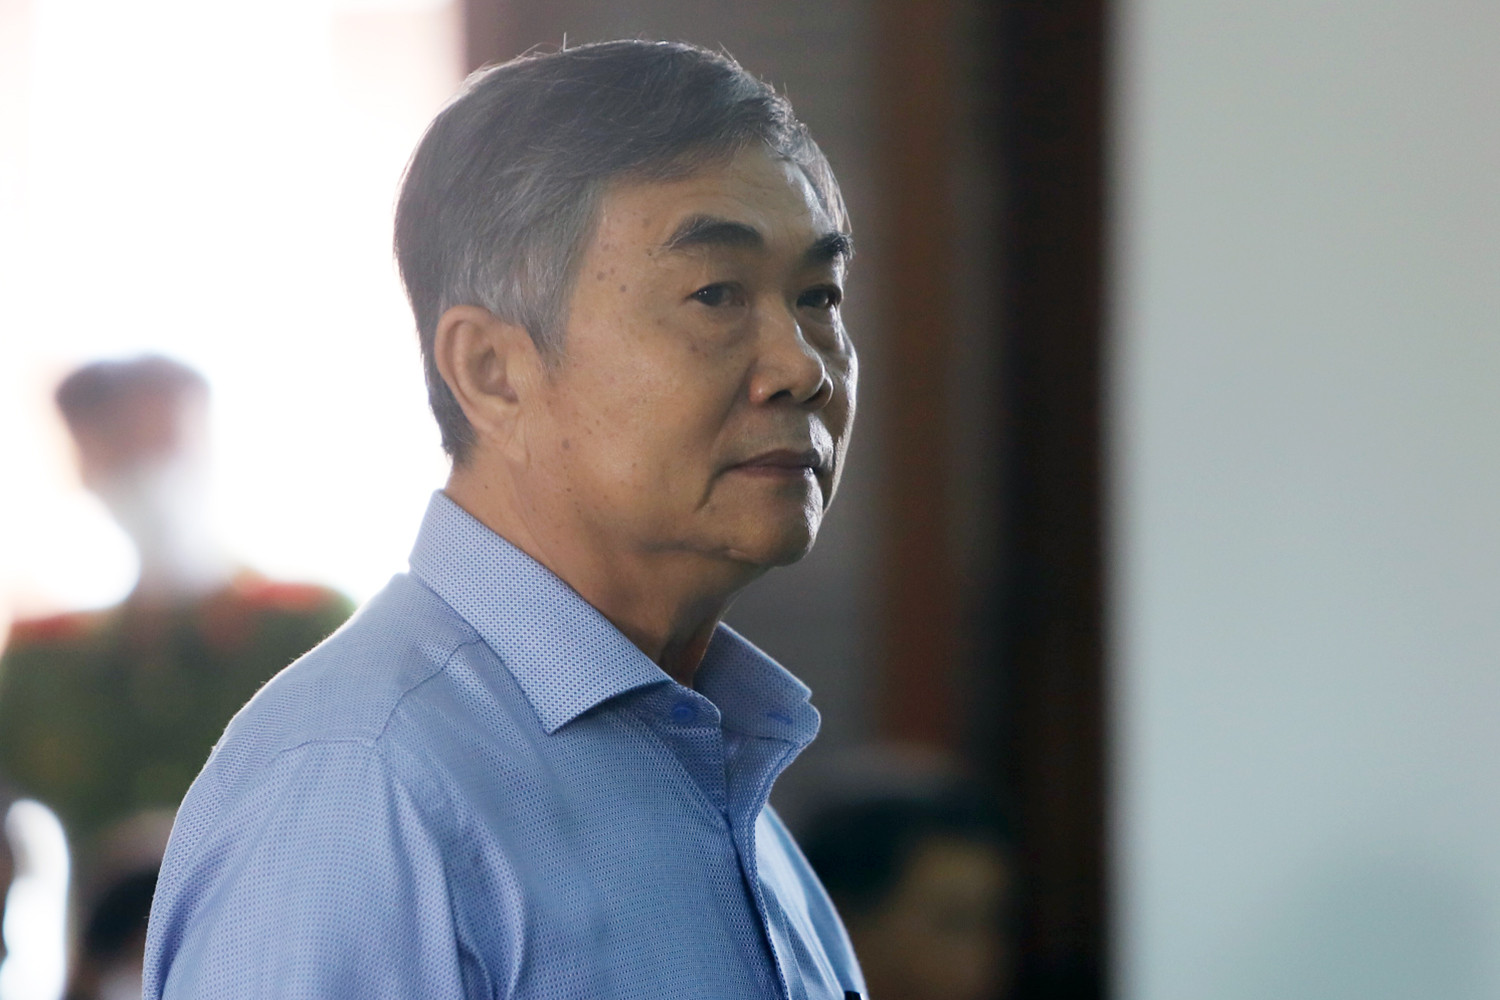 Vụ giảm giá 262 lô đất, cựu Phó Chủ tịch Phú Yên nói trách nhiệm của tập thể